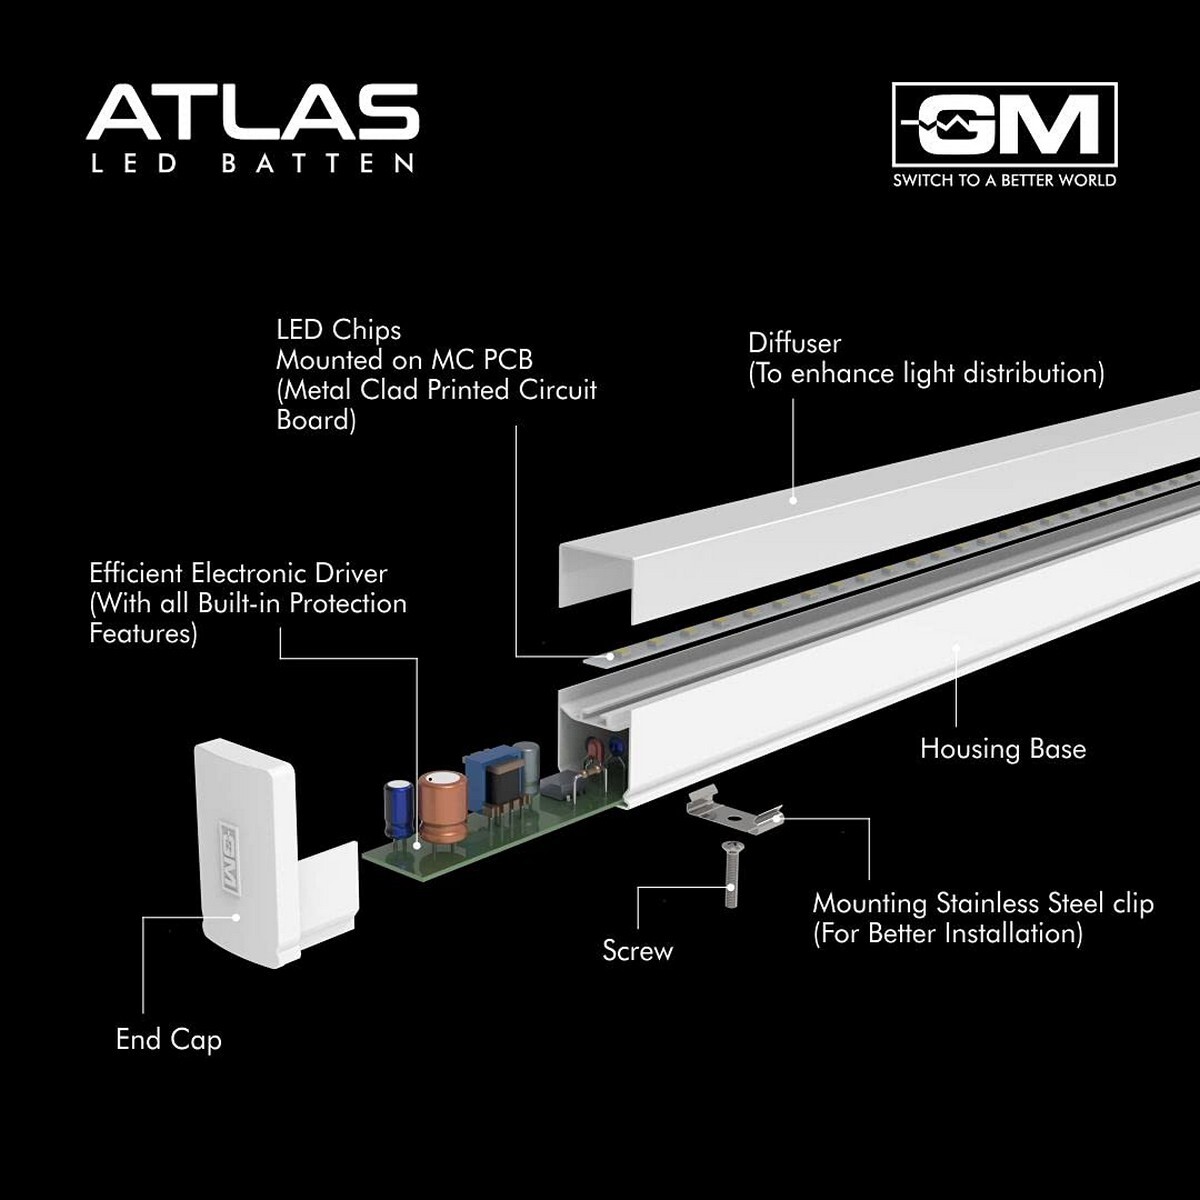 Gm Atlas Tube Light 25Watt 0378